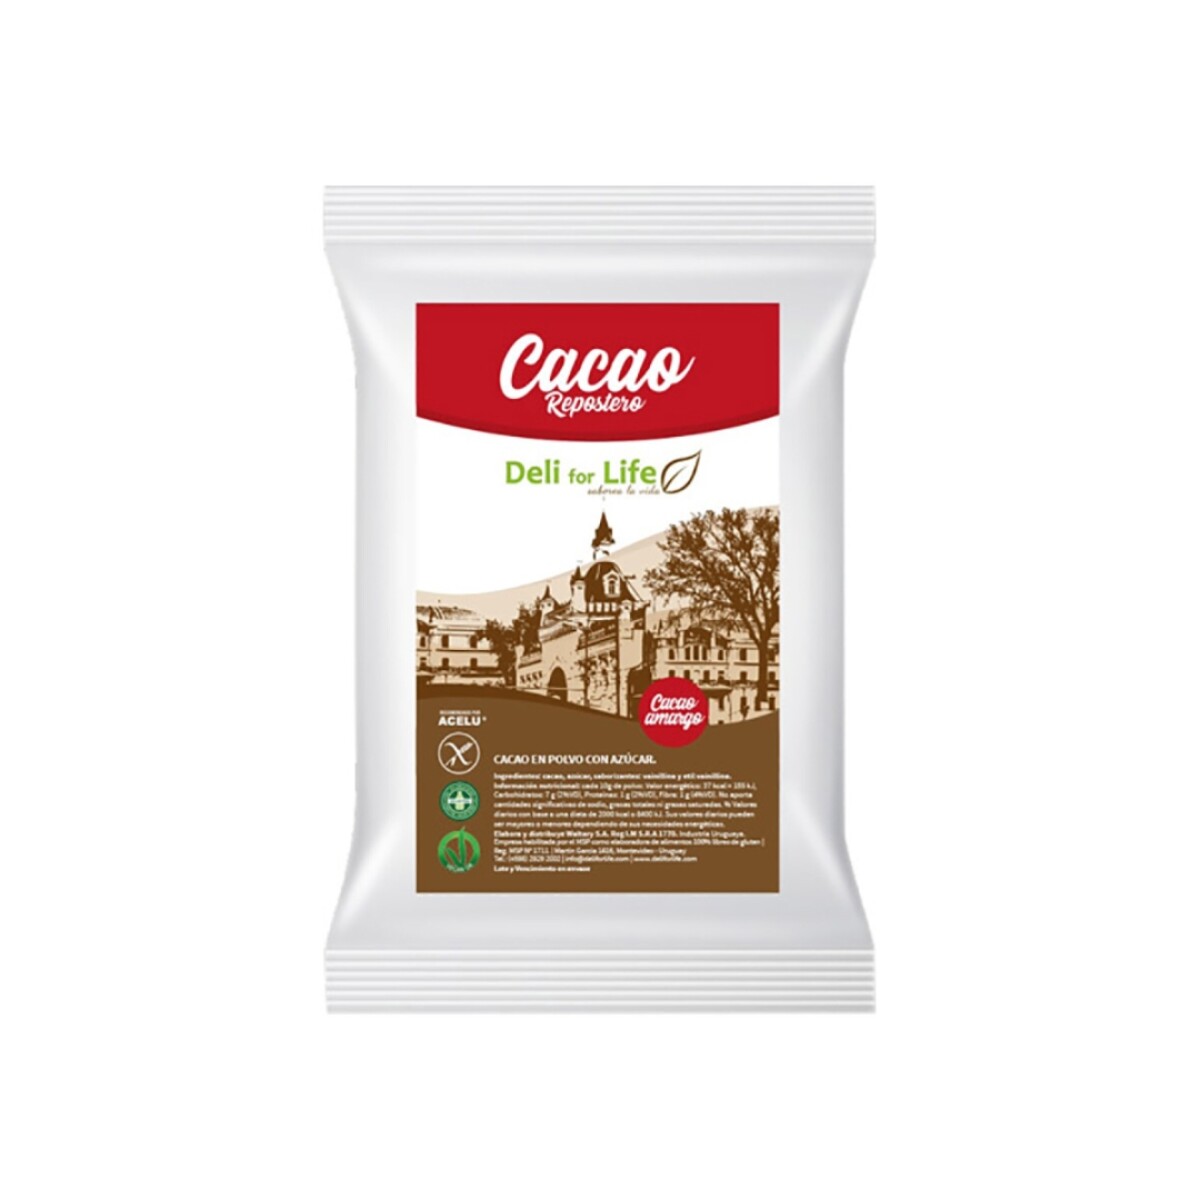 Cacao Repostero Deli for Life 250g 